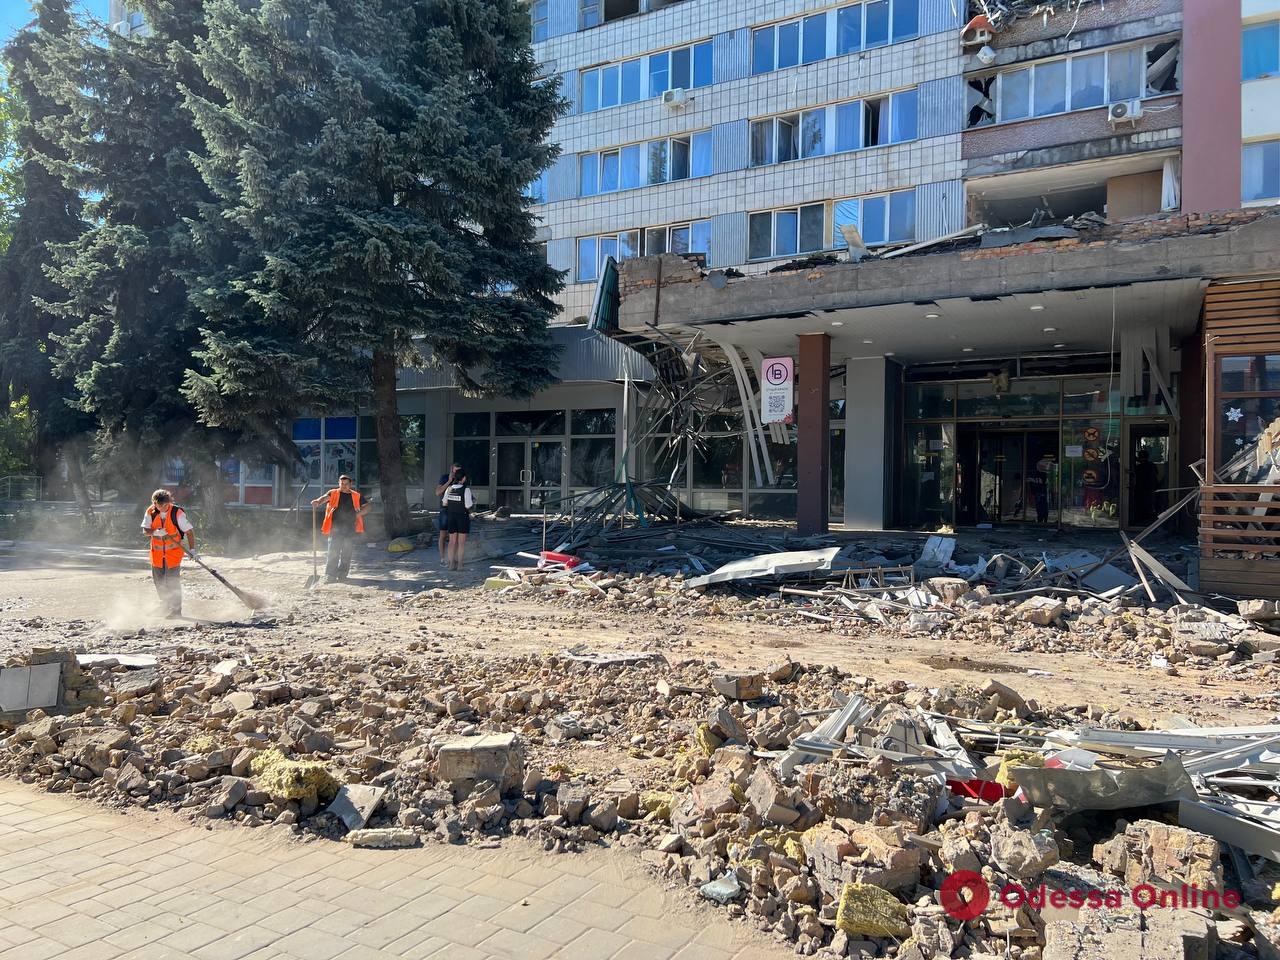 Николаев подвергся массированному ракетному обстрелу — повреждены учебные заведения, объект транспортной инфраструктуры и отель